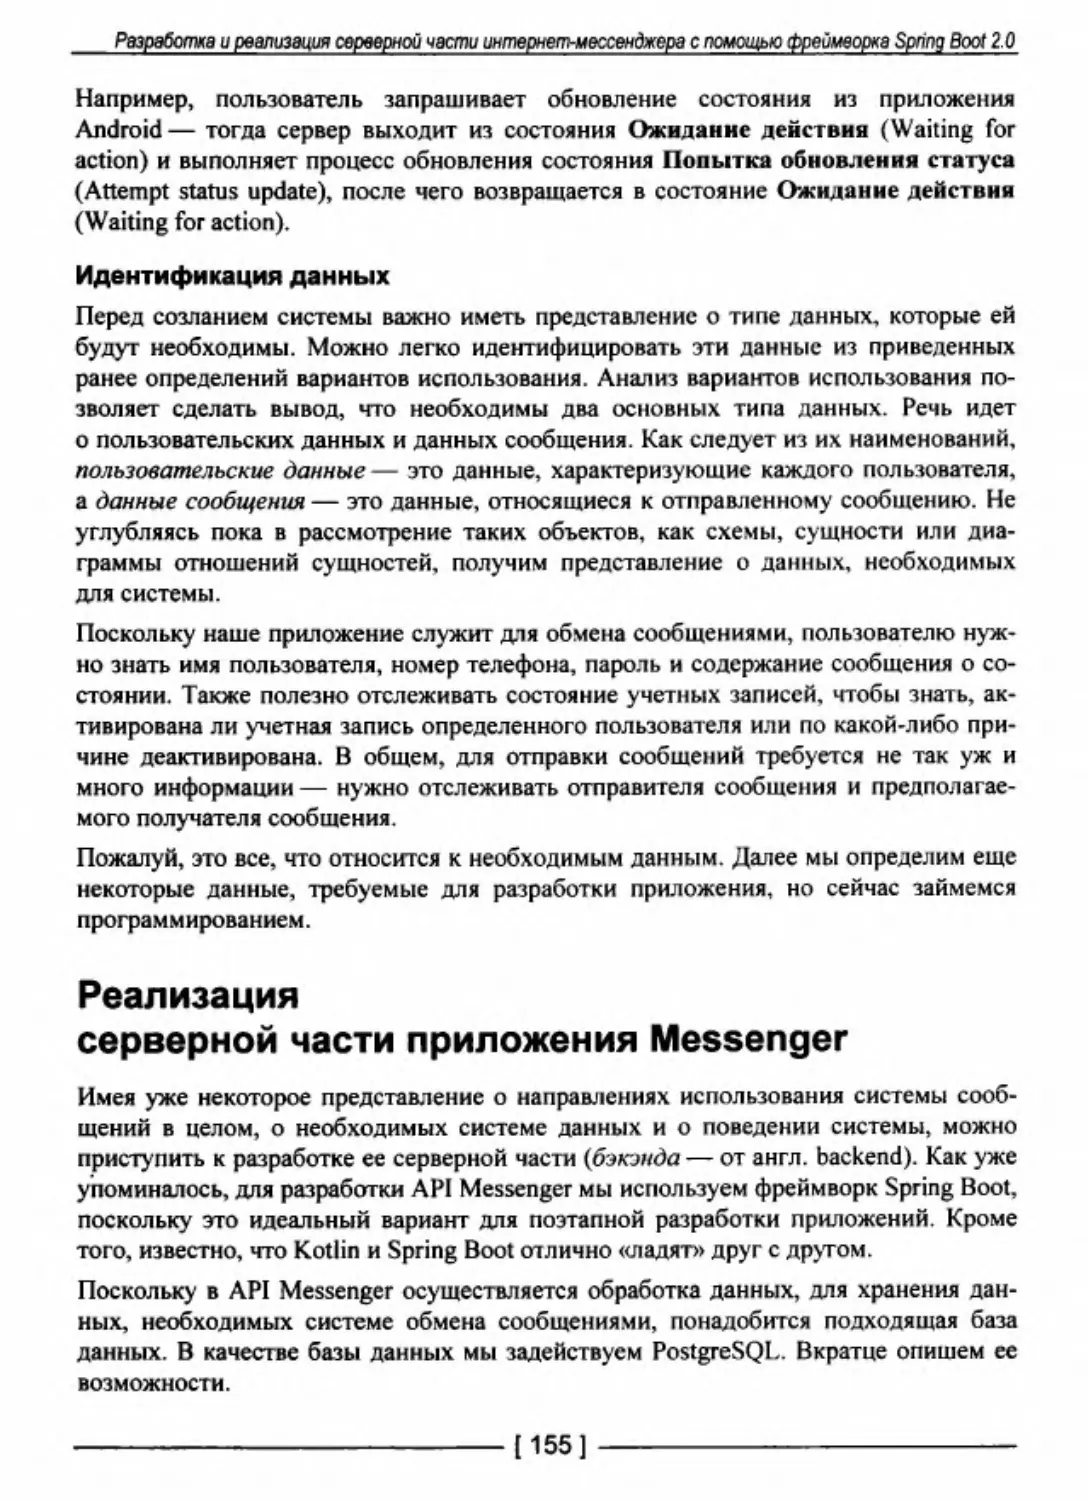 Реализация серверной части приложения Messenger